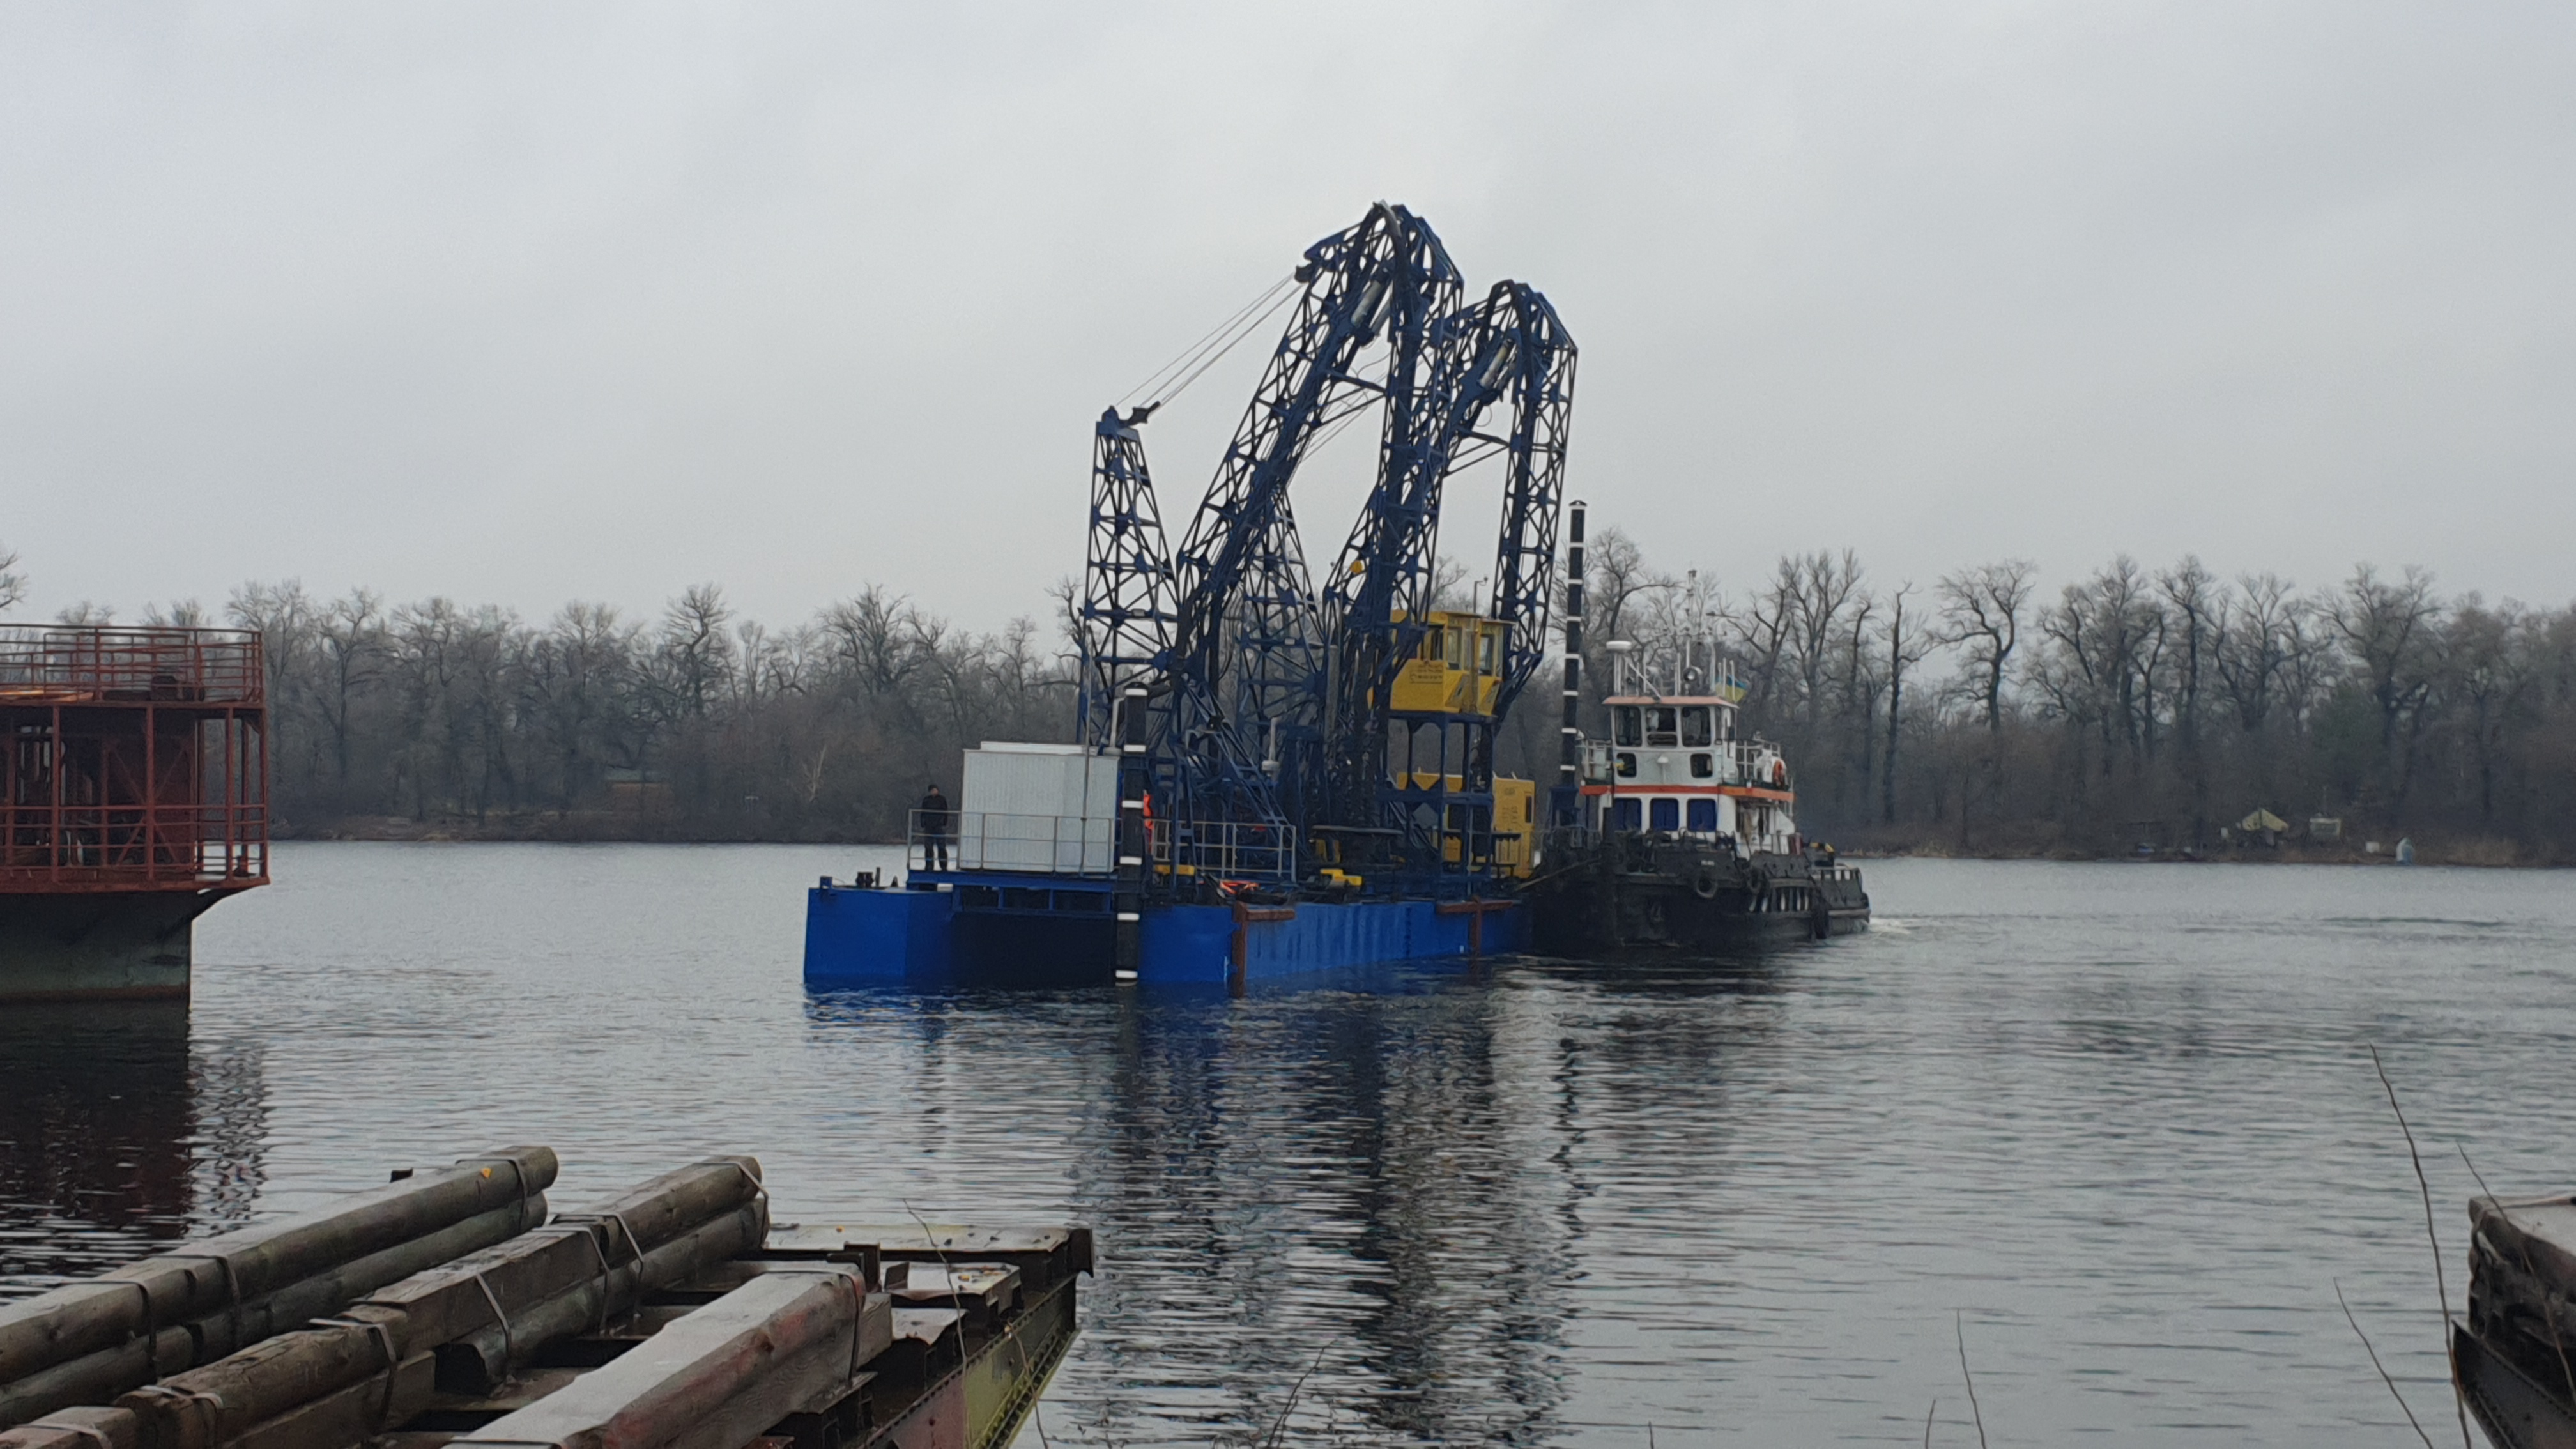 barge unloading dredger HCC GV 1600, Ukraine, VVV-Spetstekhnika